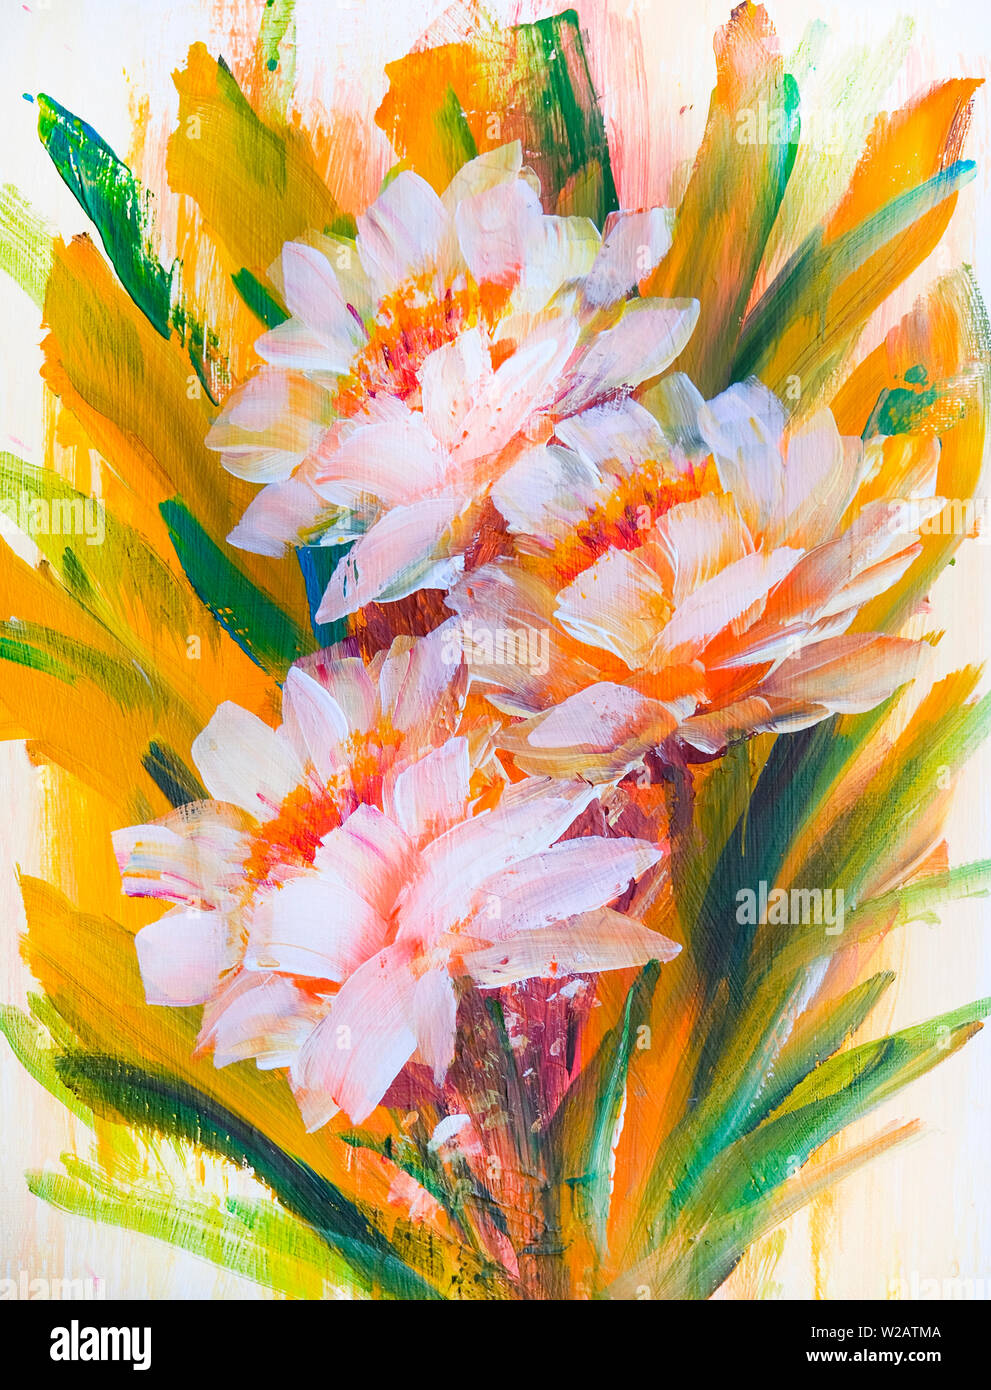 Abstrakte zarte Blumen, Ölmalerei auf Leinwand. Hand gemalte Blumen  Stockfotografie - Alamy